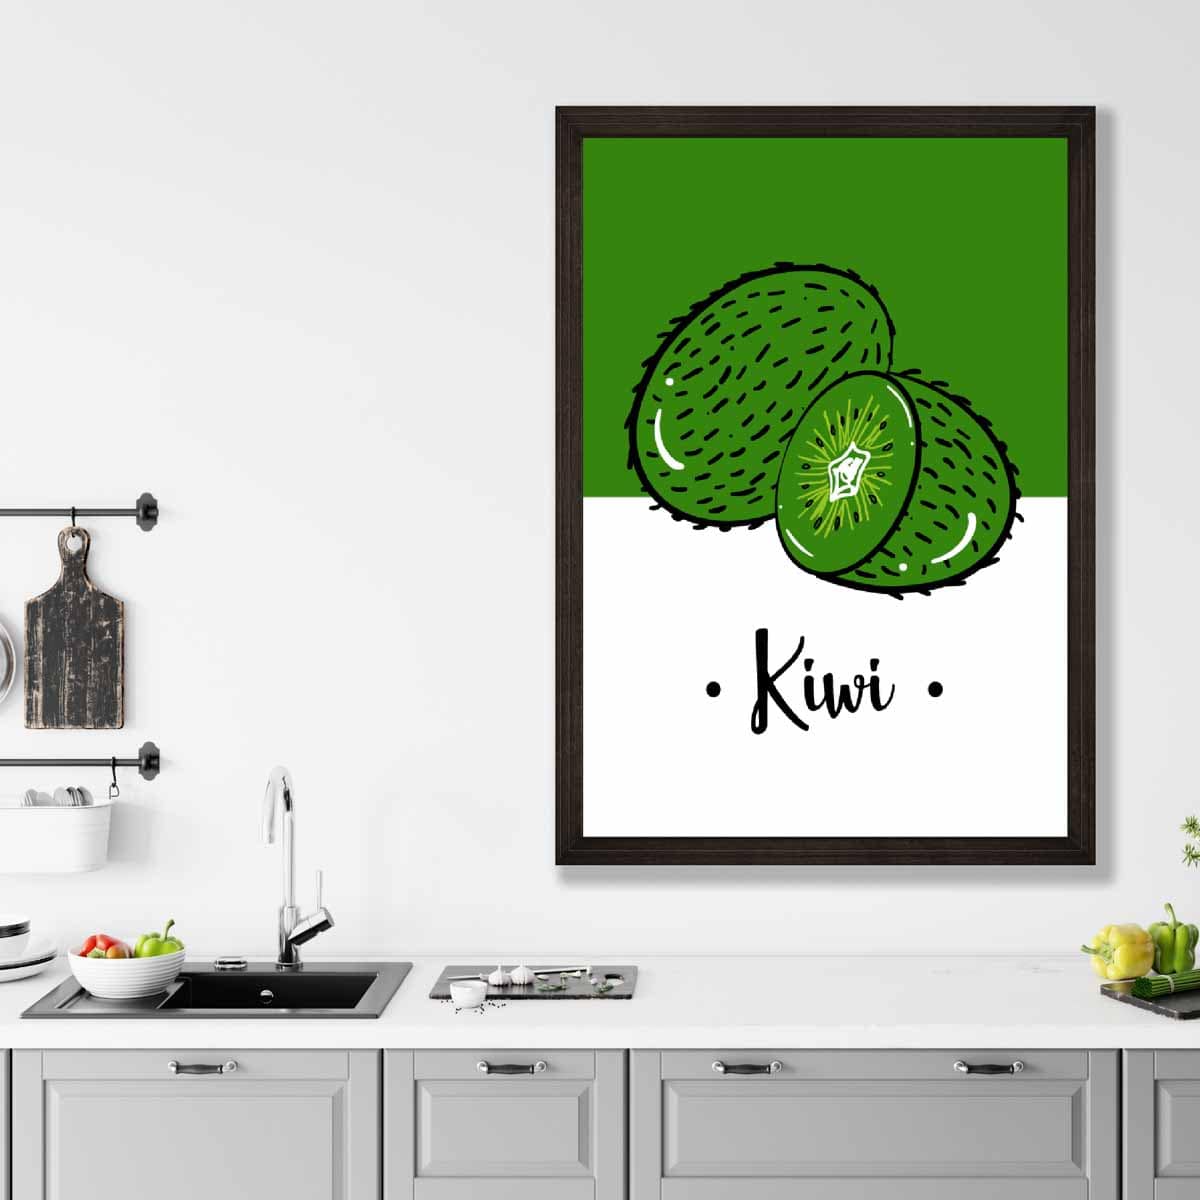 Sketch Fruit Poster of Kiwis in Green